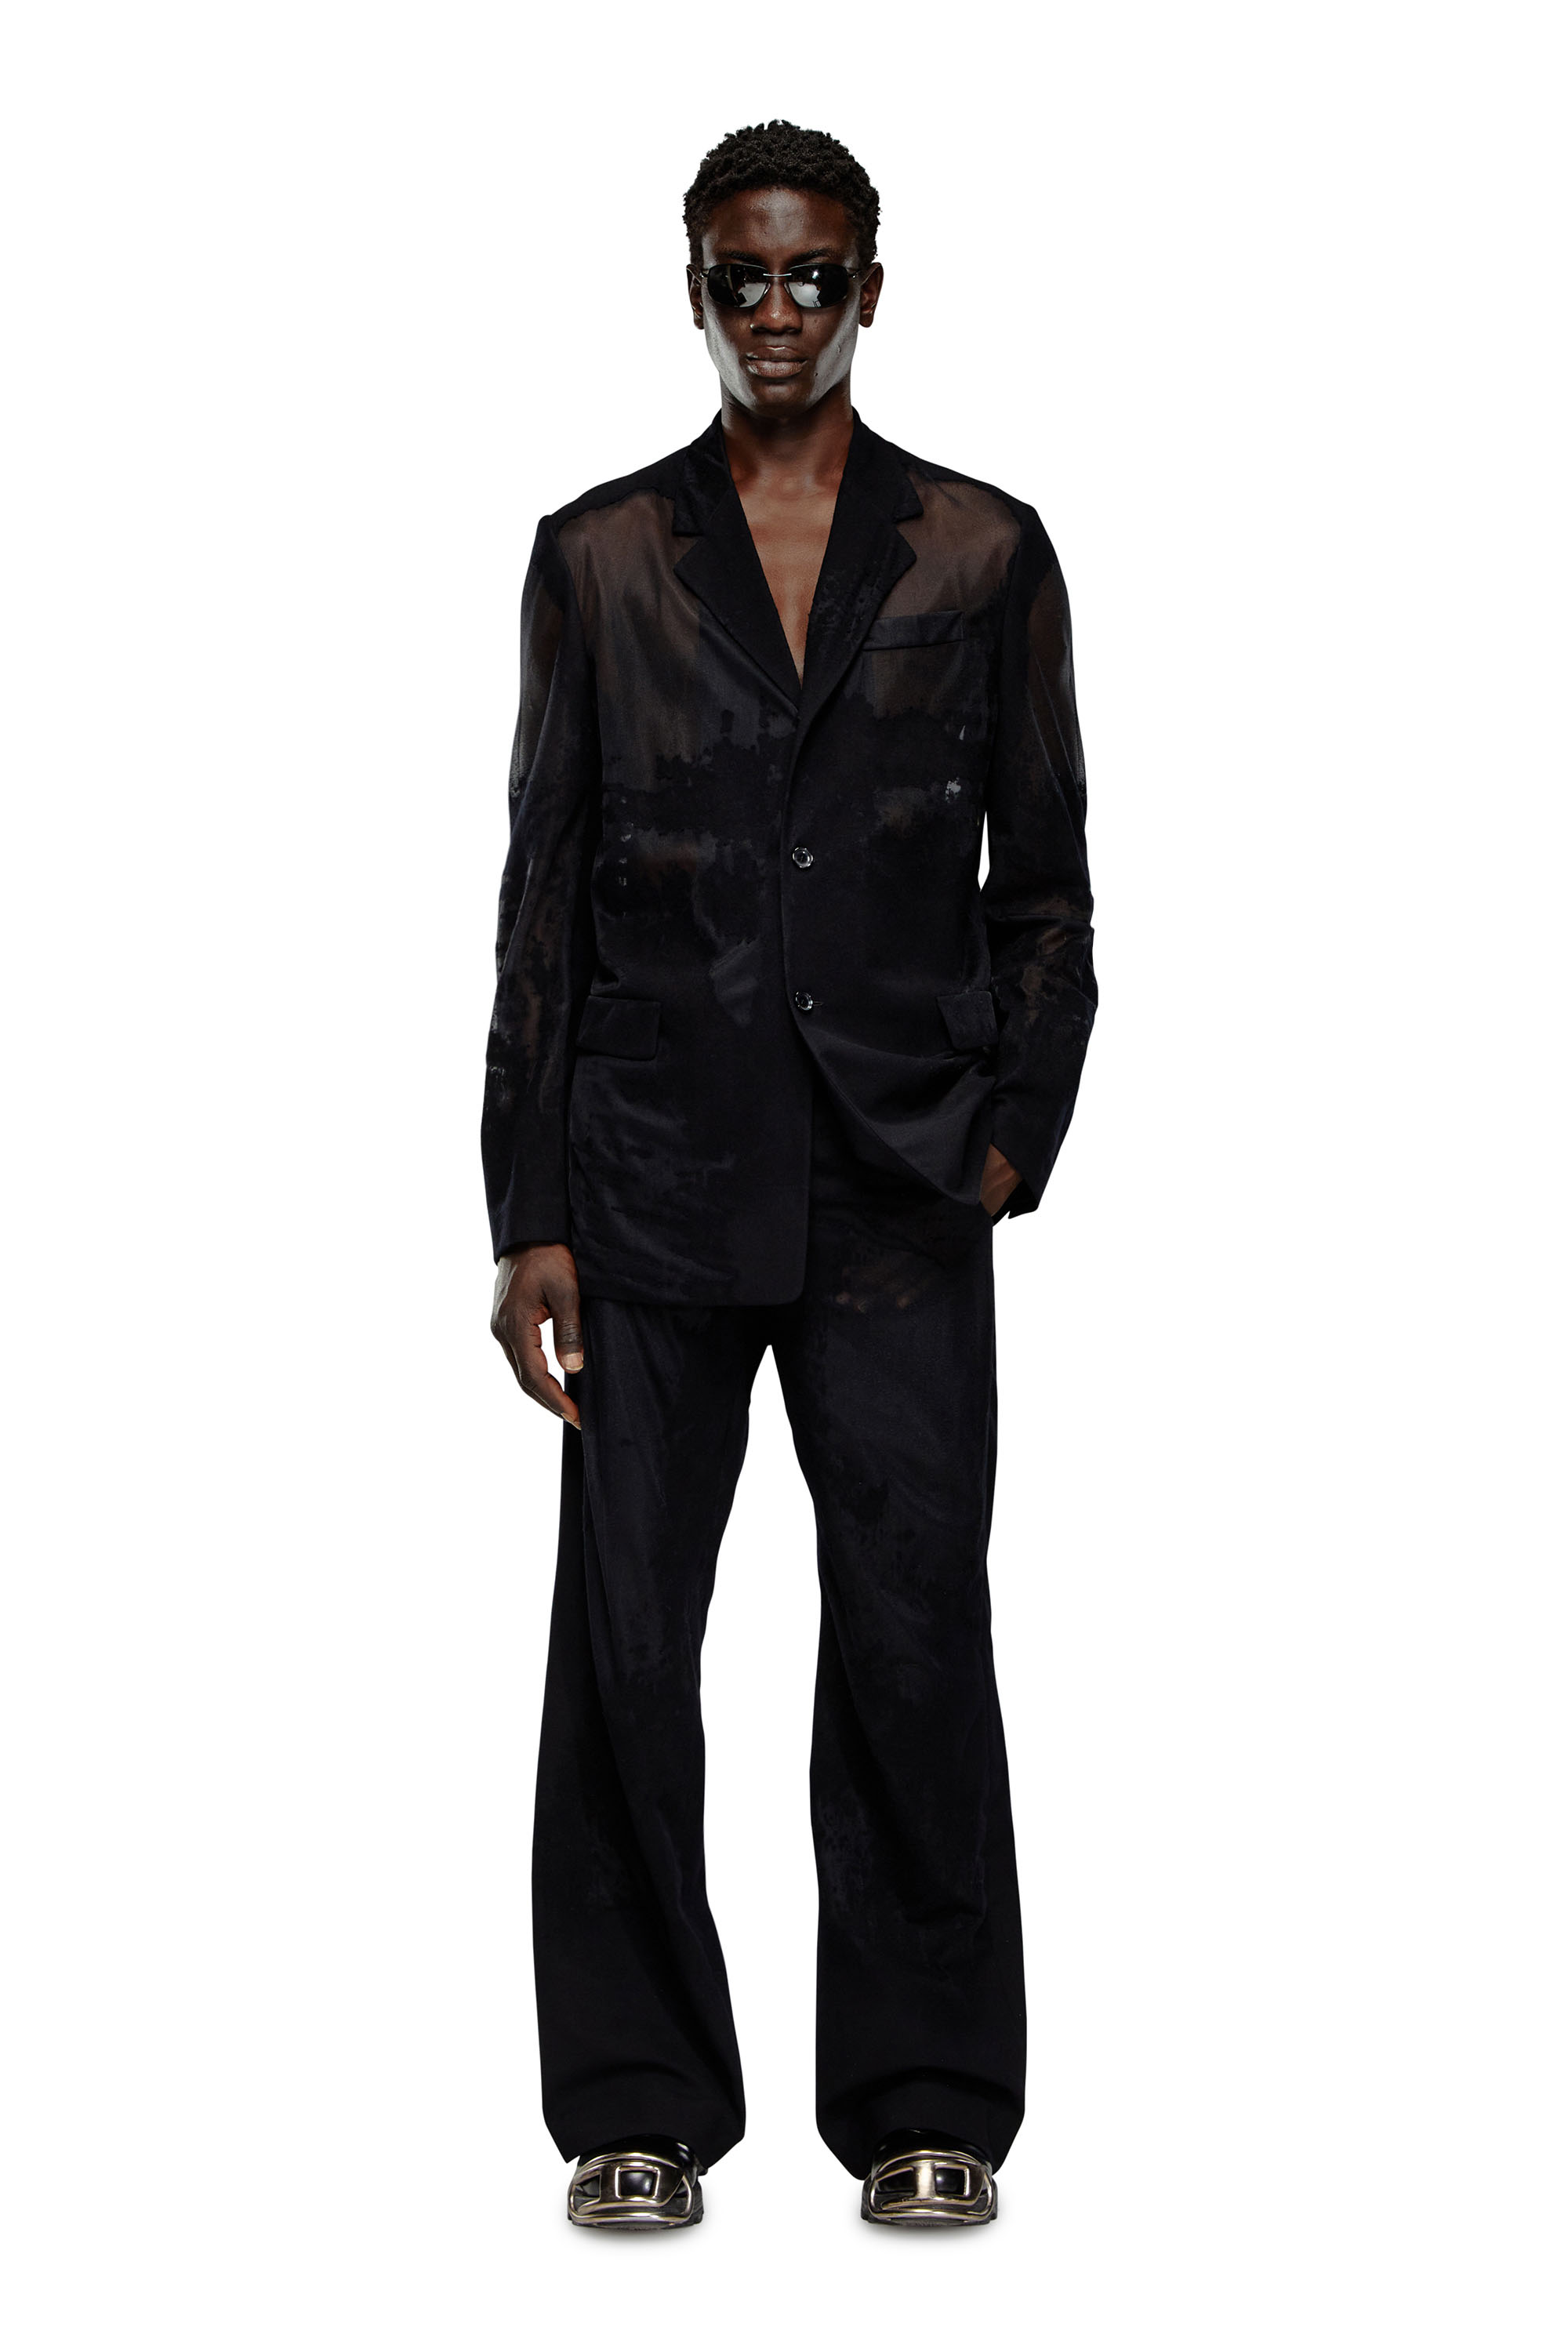 Diesel - J-REG, Man Tailored jacket in devoré cool wool in Black - Image 2